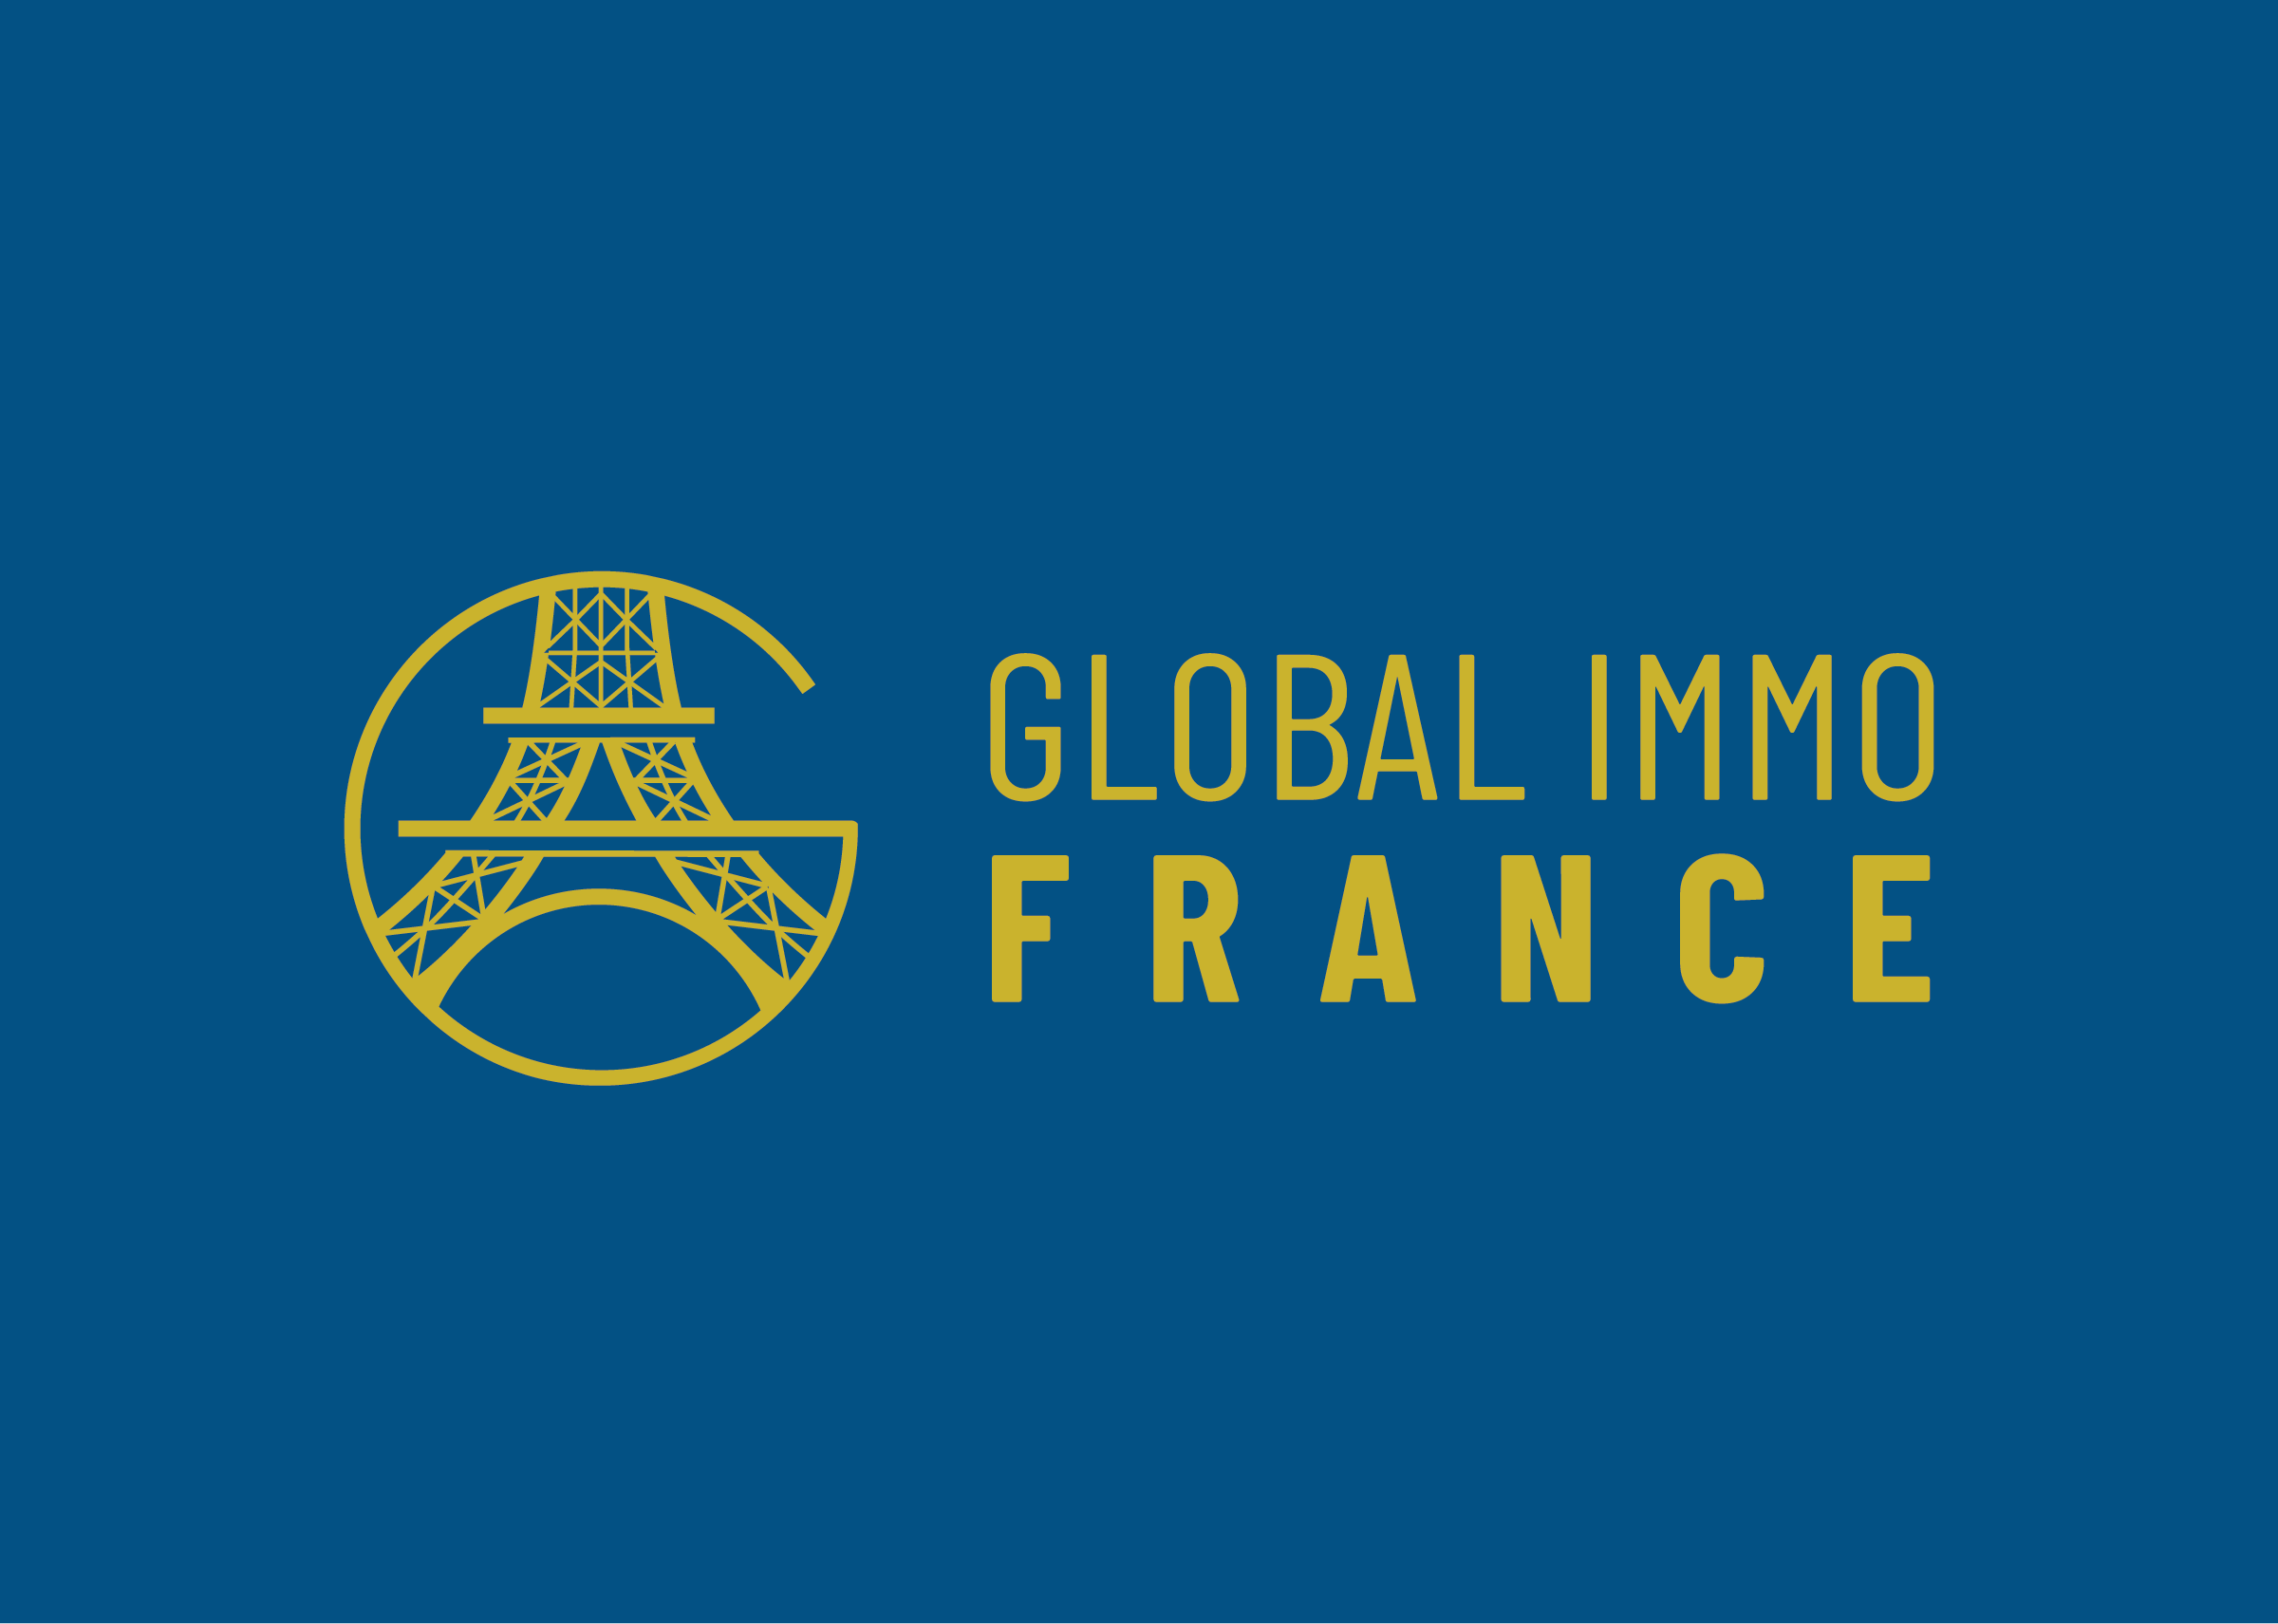 Création de l'identité visuelle Global Immo France